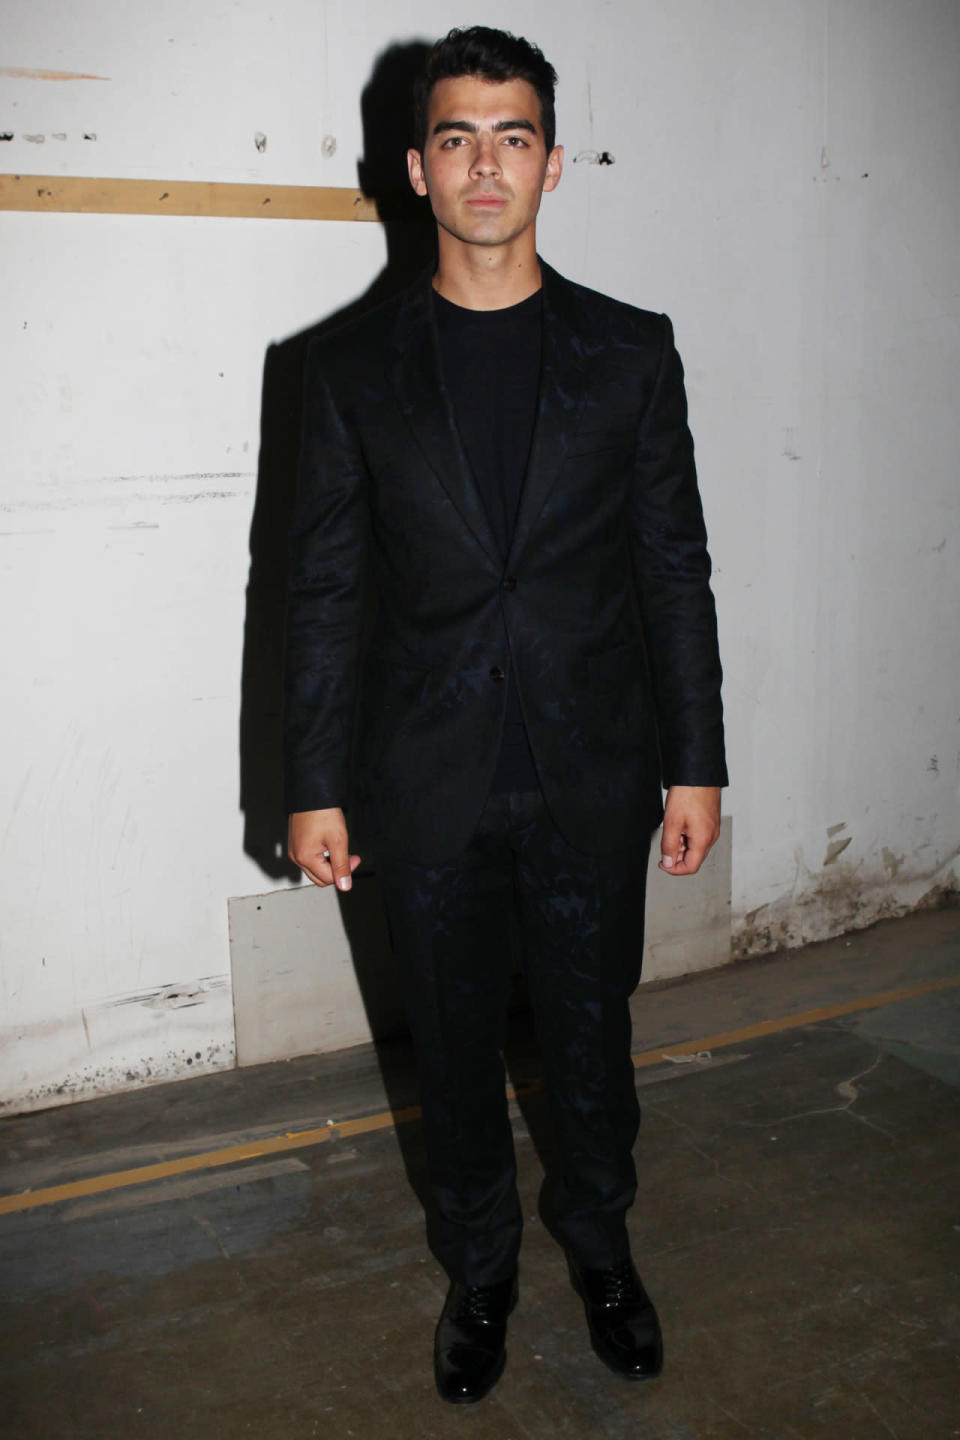 Joe Jonas backstage at Versace’s spring 2016 runway show in Milan.